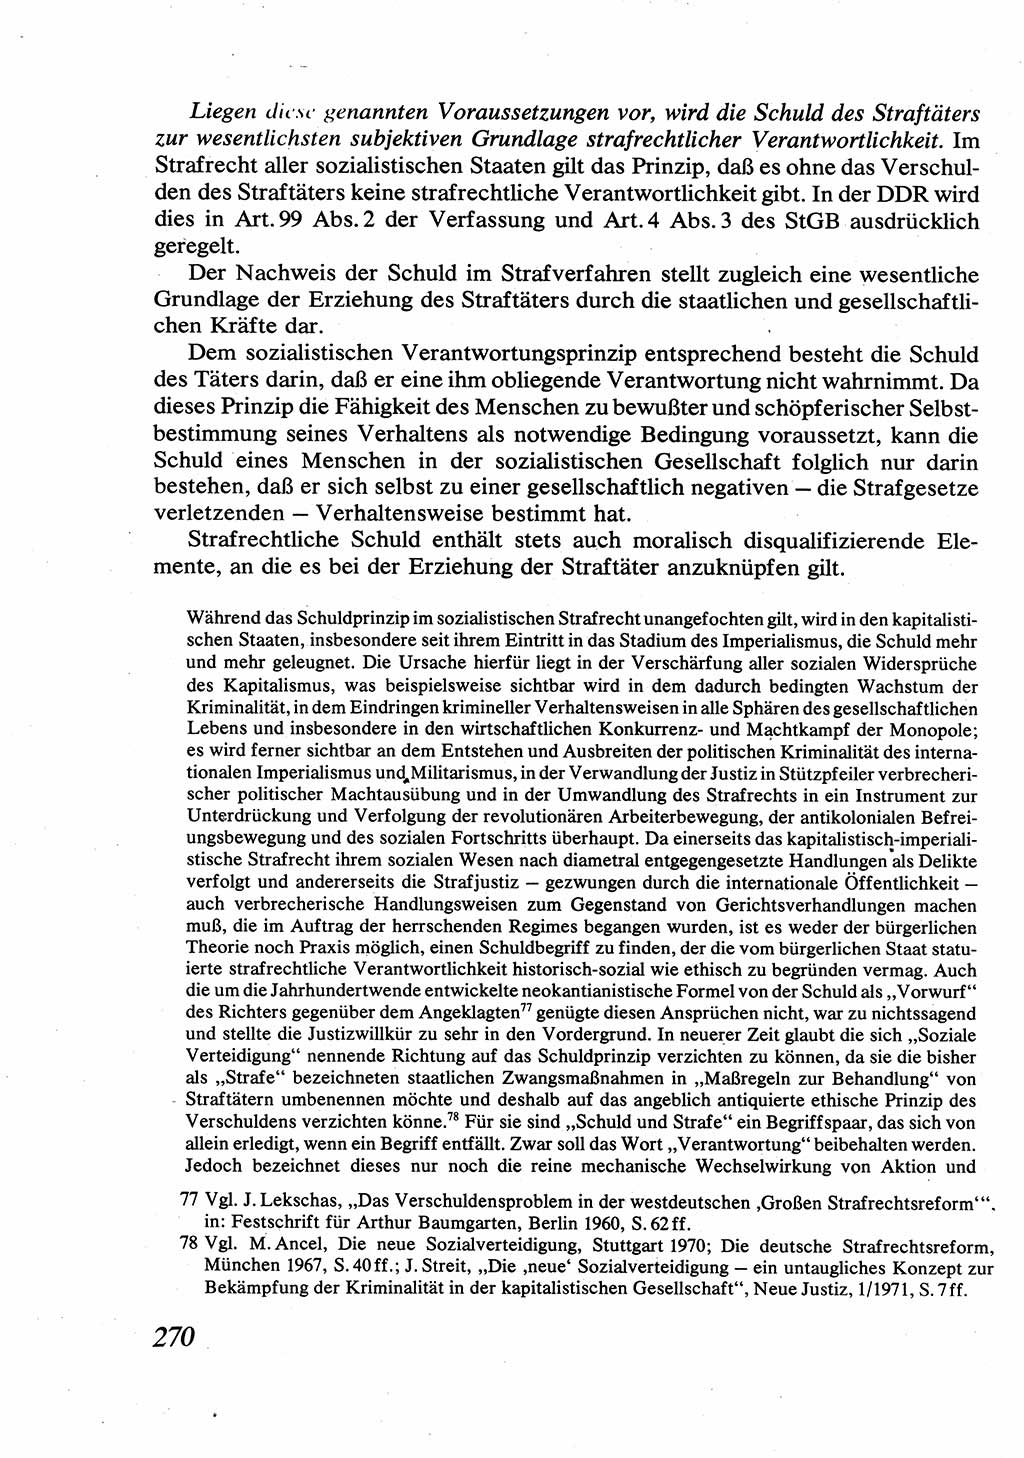 Strafrecht [Deutsche Demokratische Republik (DDR)], Allgemeiner Teil, Lehrbuch 1976, Seite 270 (Strafr. DDR AT Lb. 1976, S. 270)